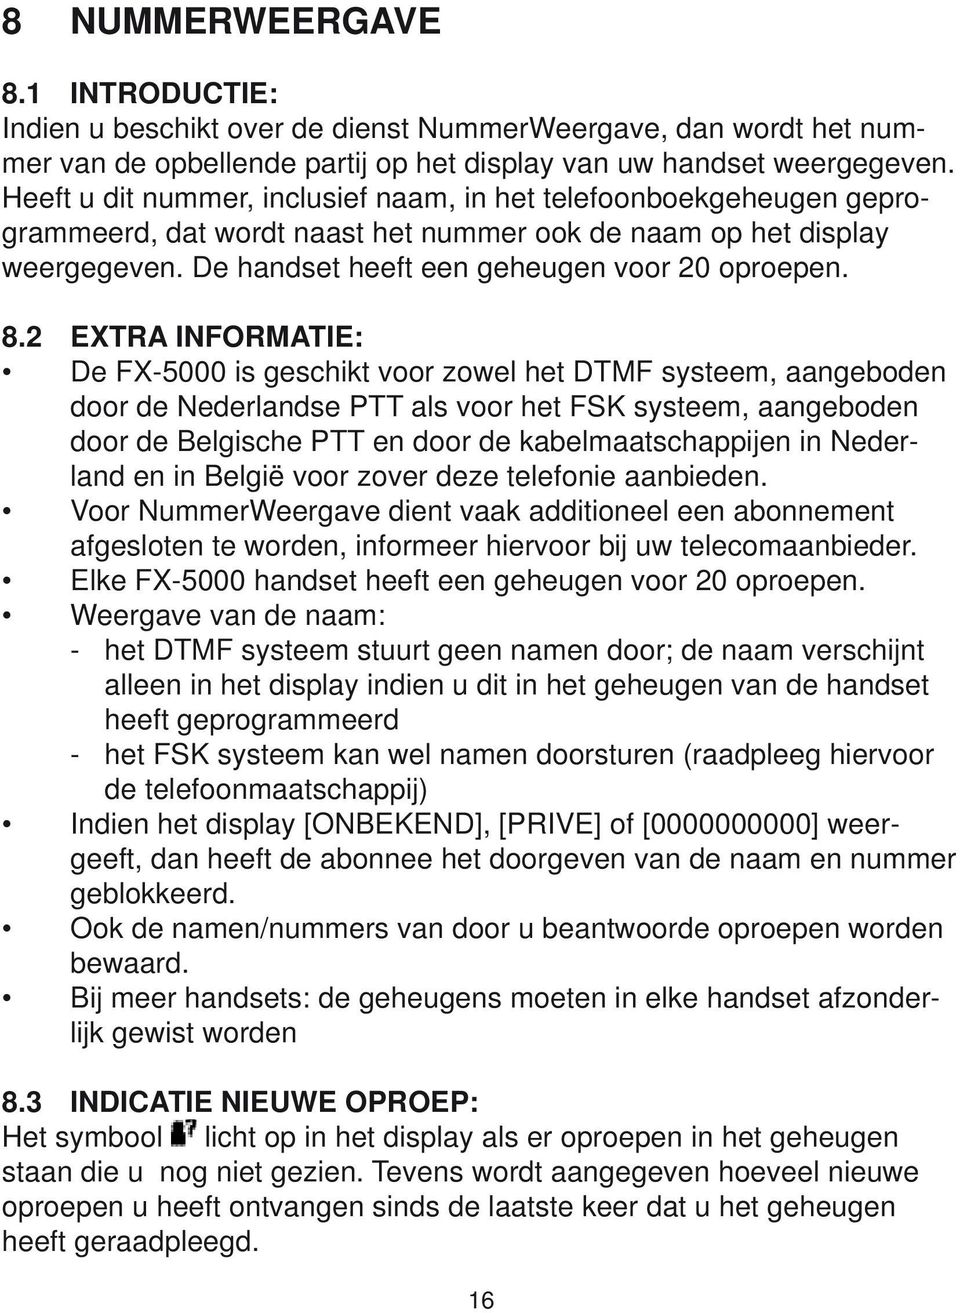 2 EXTRA INFORMATIE: De FX5000 is geschikt voor zowel het DTMF systeem, aangeboden door de Nederlandse PTT als voor het FSK systeem, aangeboden door de Belgische PTT en door de kabelmaatschappijen in